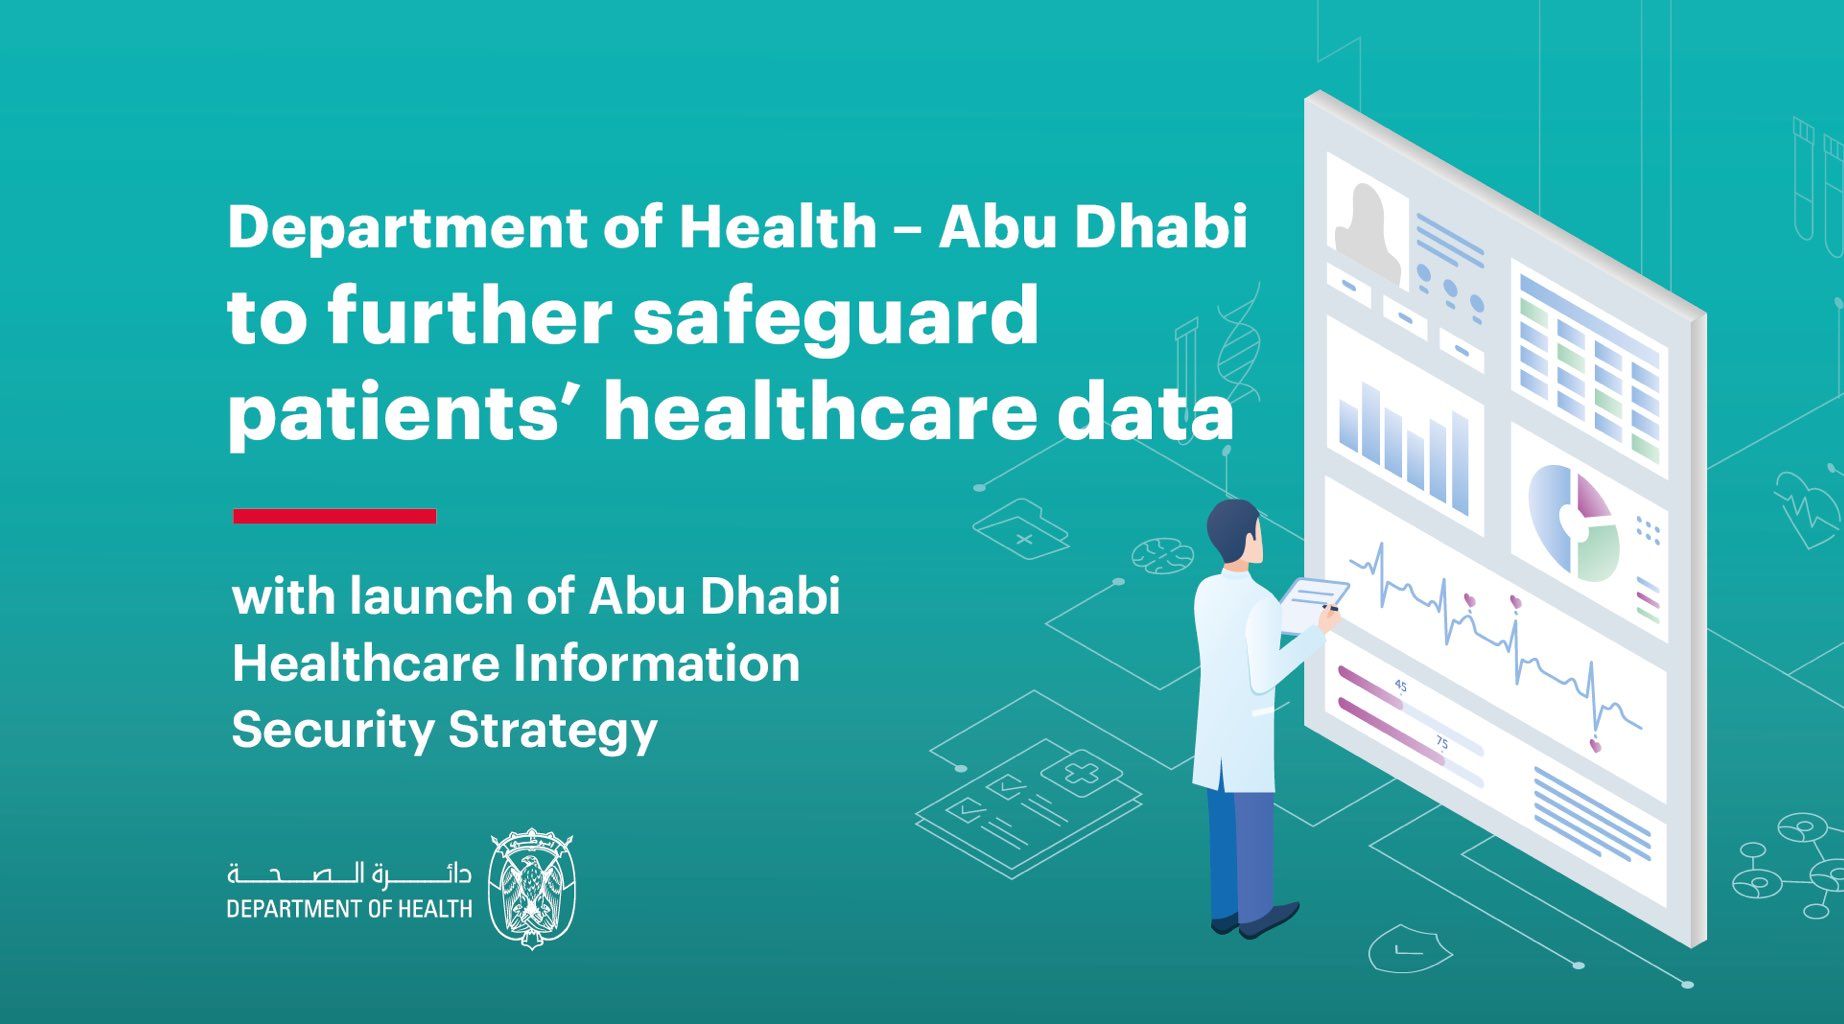 تعد هذه الاستراتيجية جزءًا من الجهود المستمرة لتعزيز البنية التحتية لمعلومات قطاع الرعاية الصحية